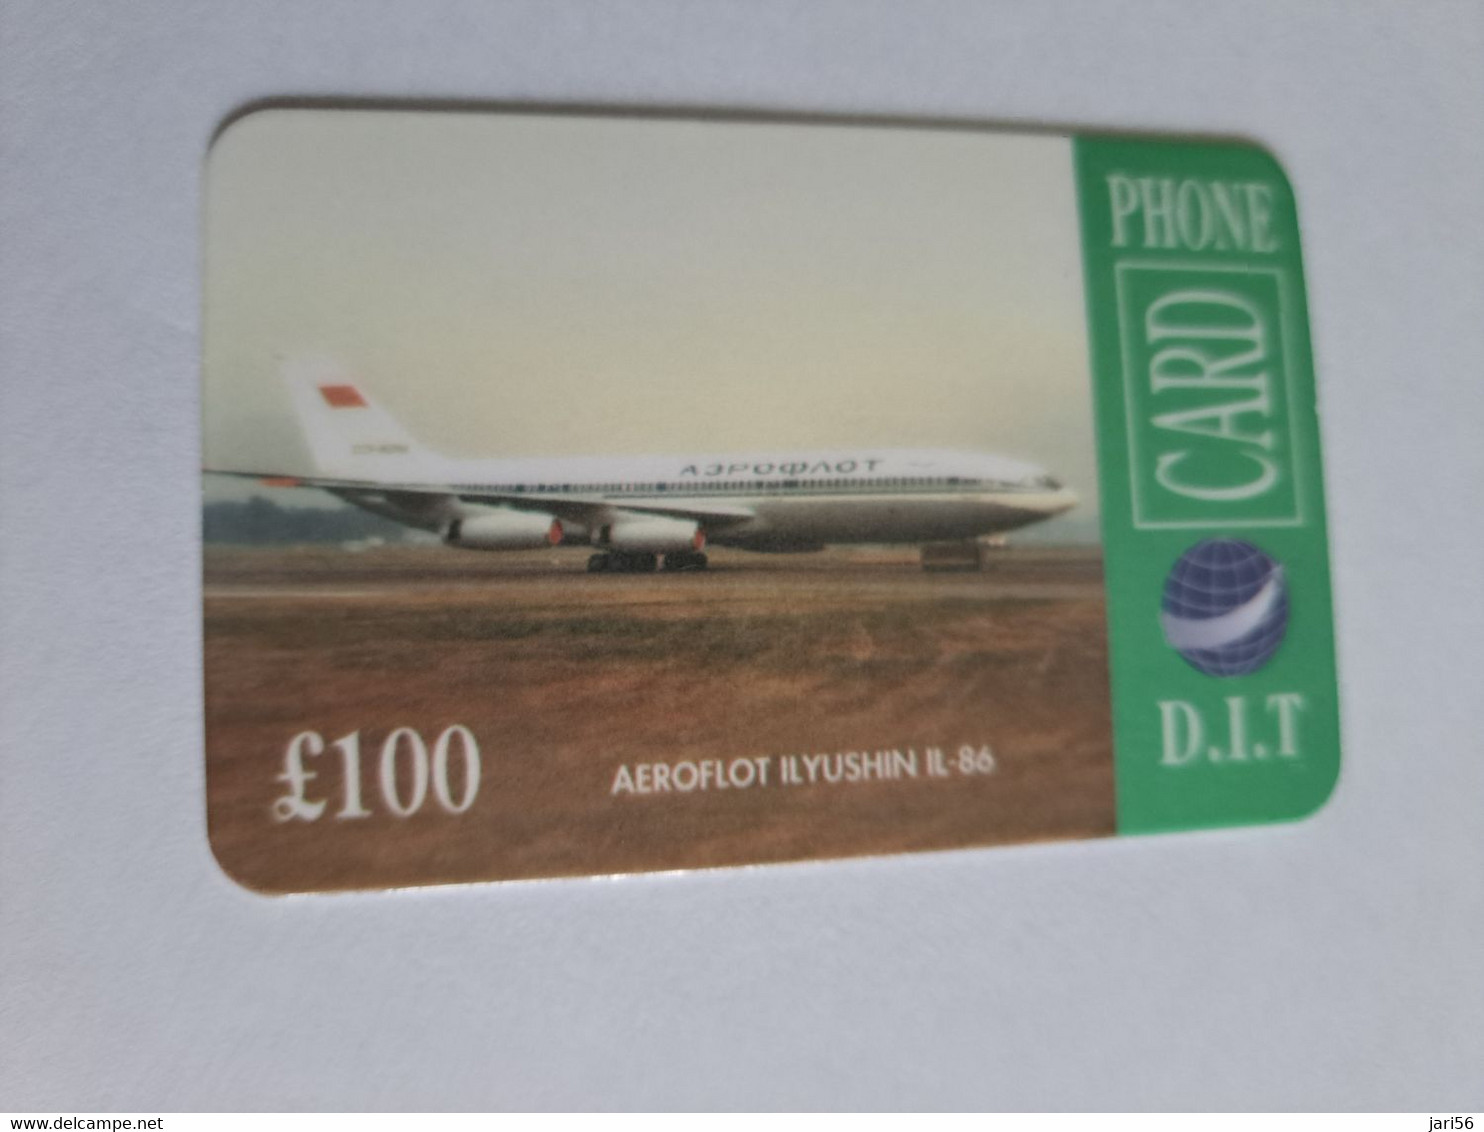 GREAT BRITAIN   100 POUND   / AEROFLOT YUSHIN FL 86    DIT PHONECARD    PREPAID CARD      **12902** - [10] Sammlungen